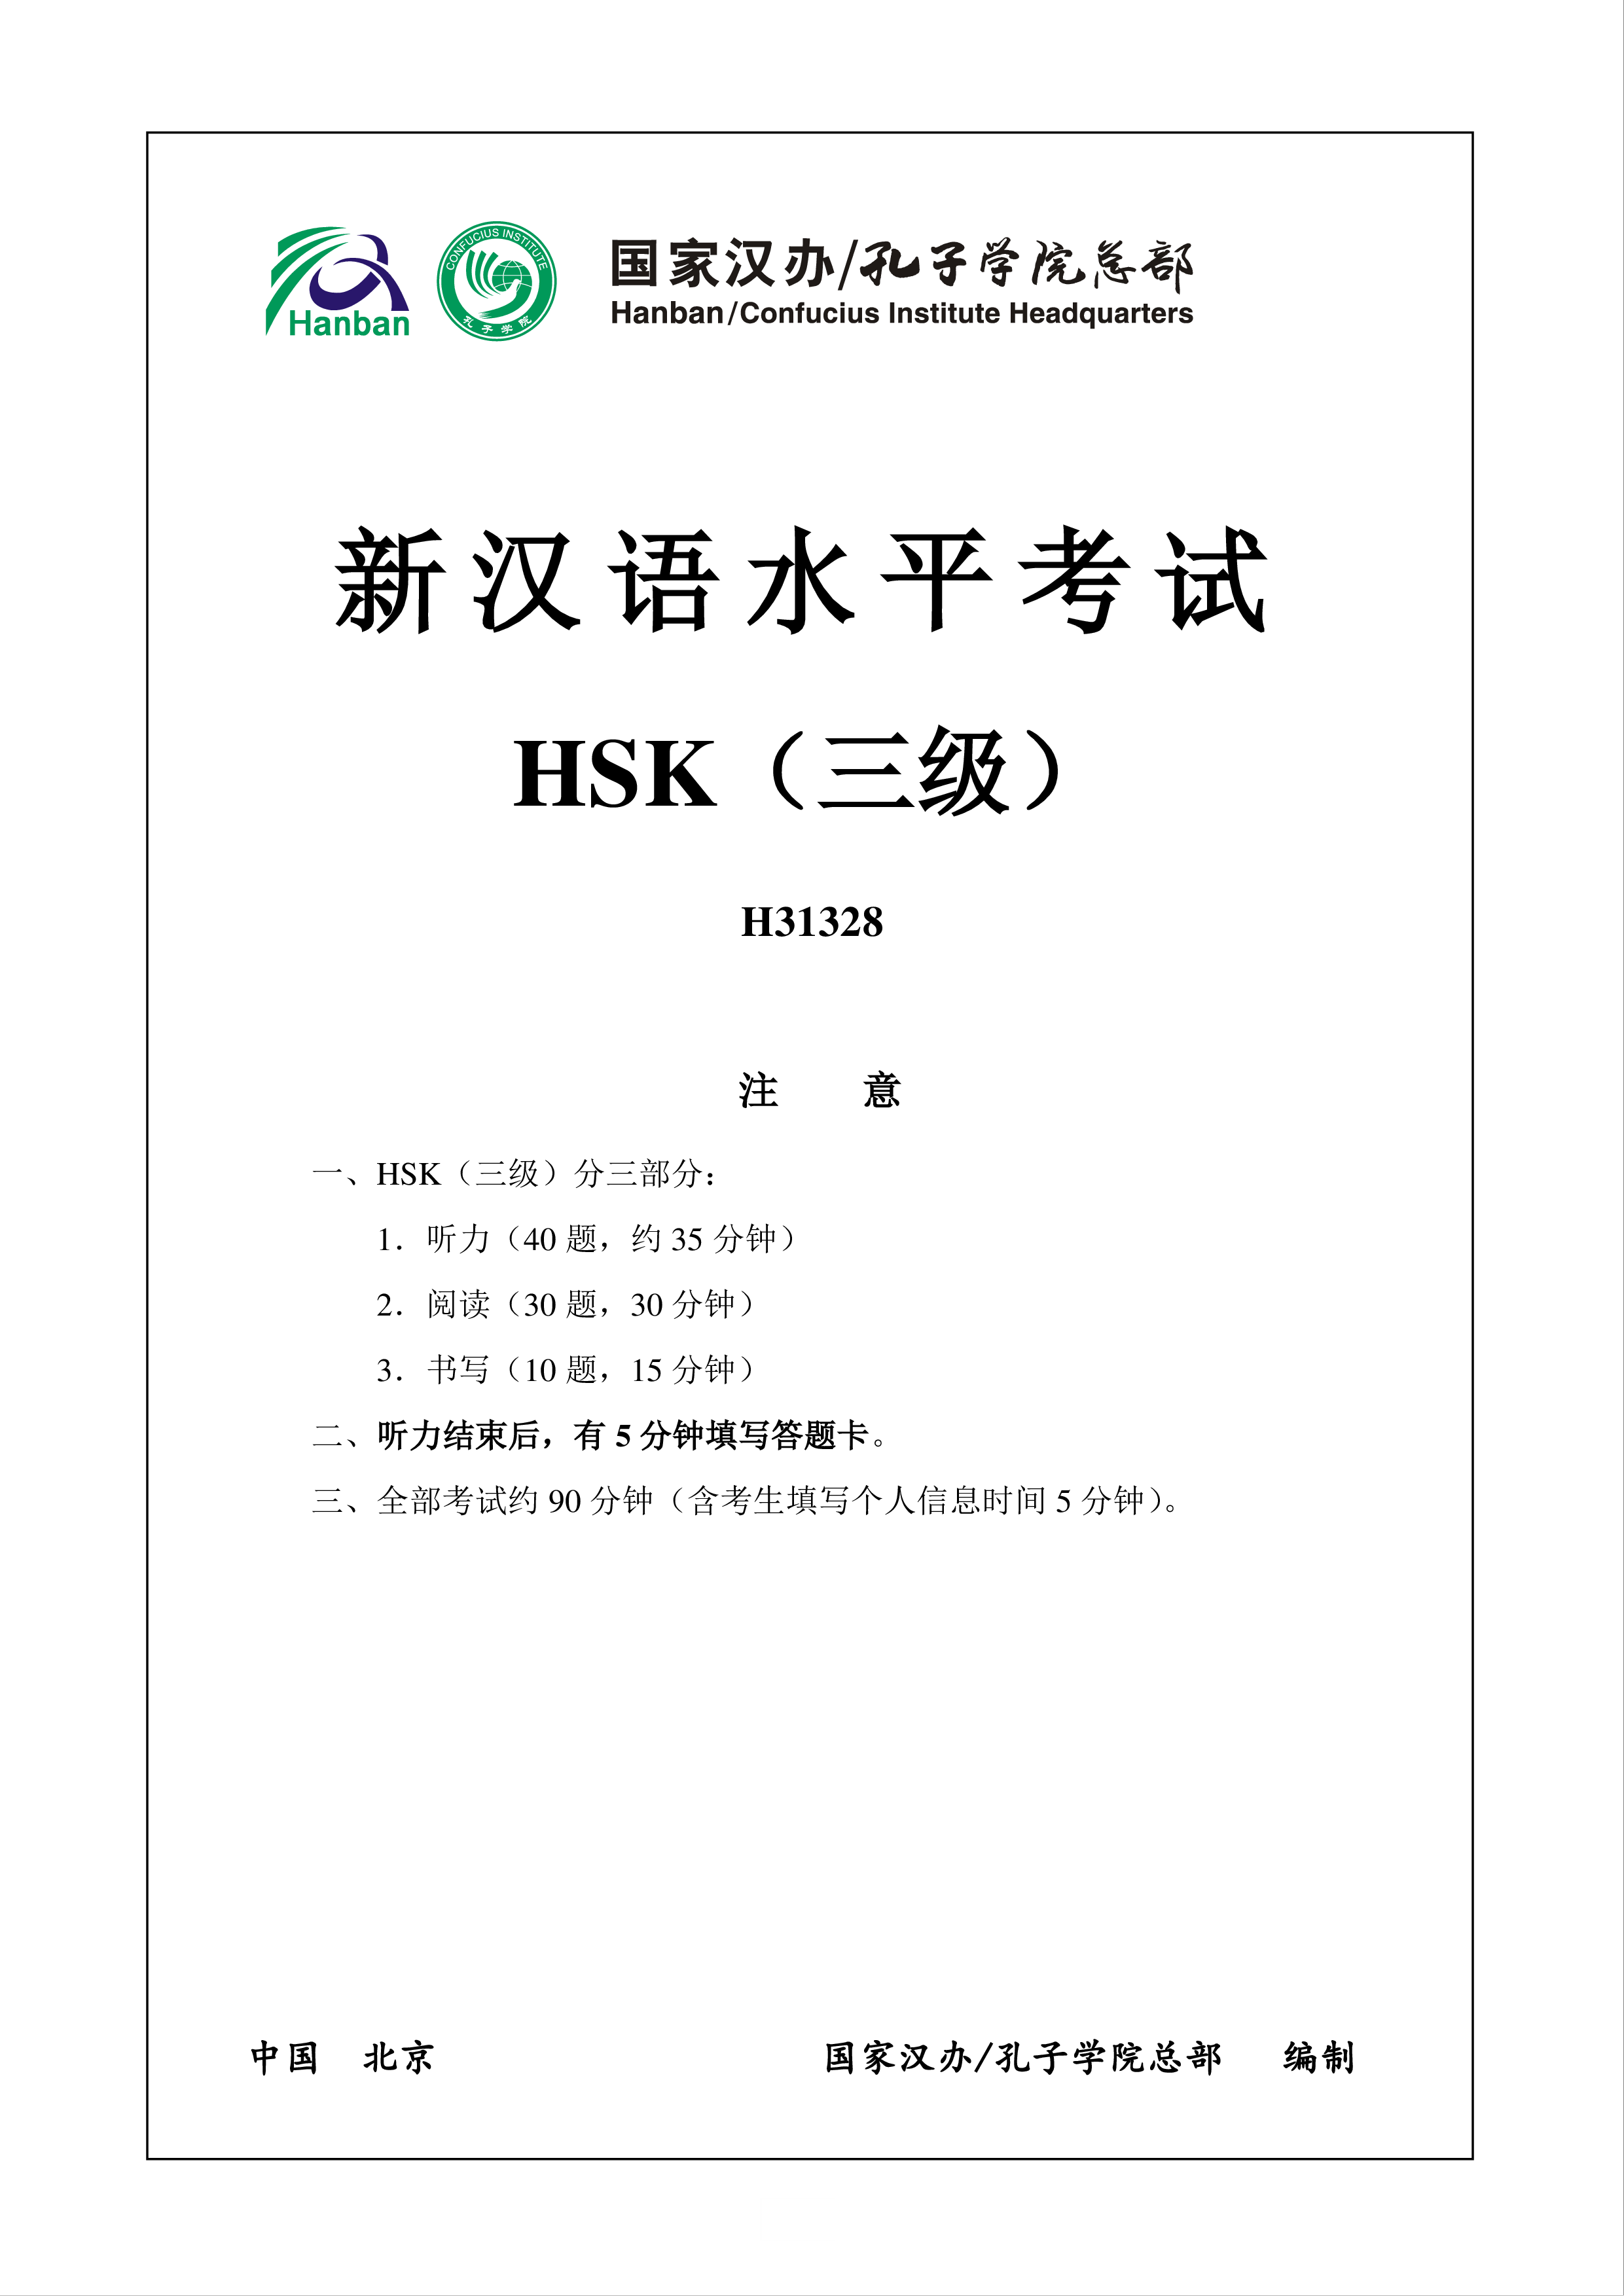 新汉语水平hsk三级考试h31328模拟真题考试音频和答案 modèles